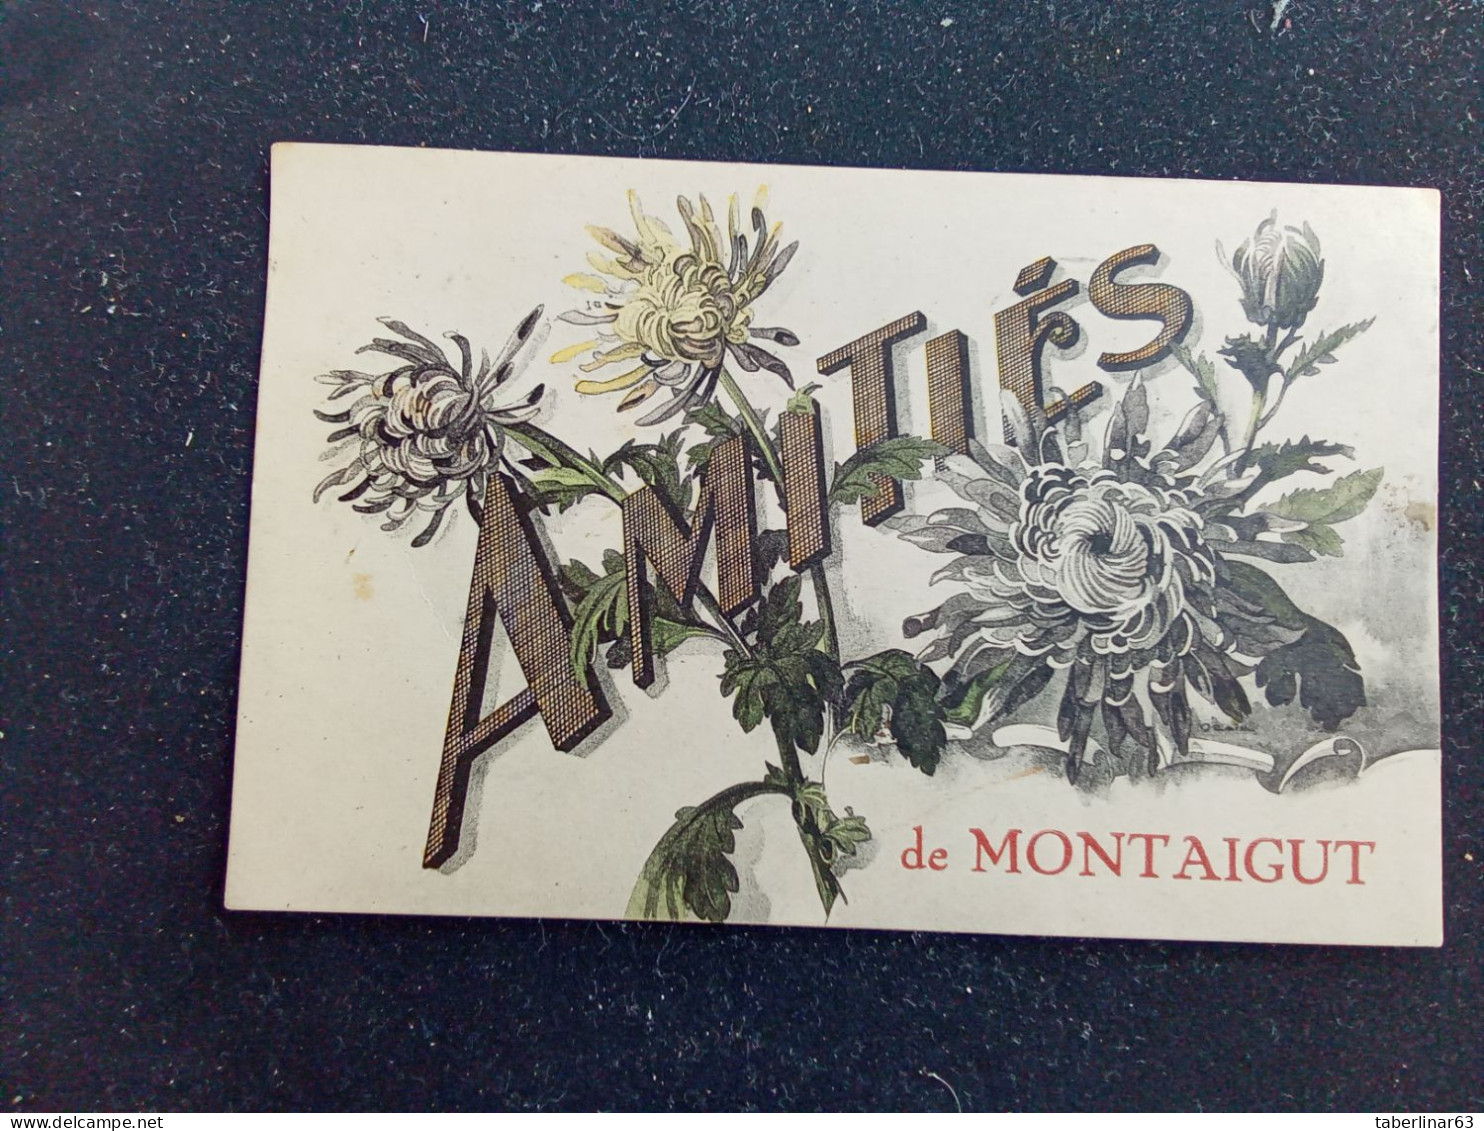 Montaigut En Combraille (amitiés) 9€ - Montaigut